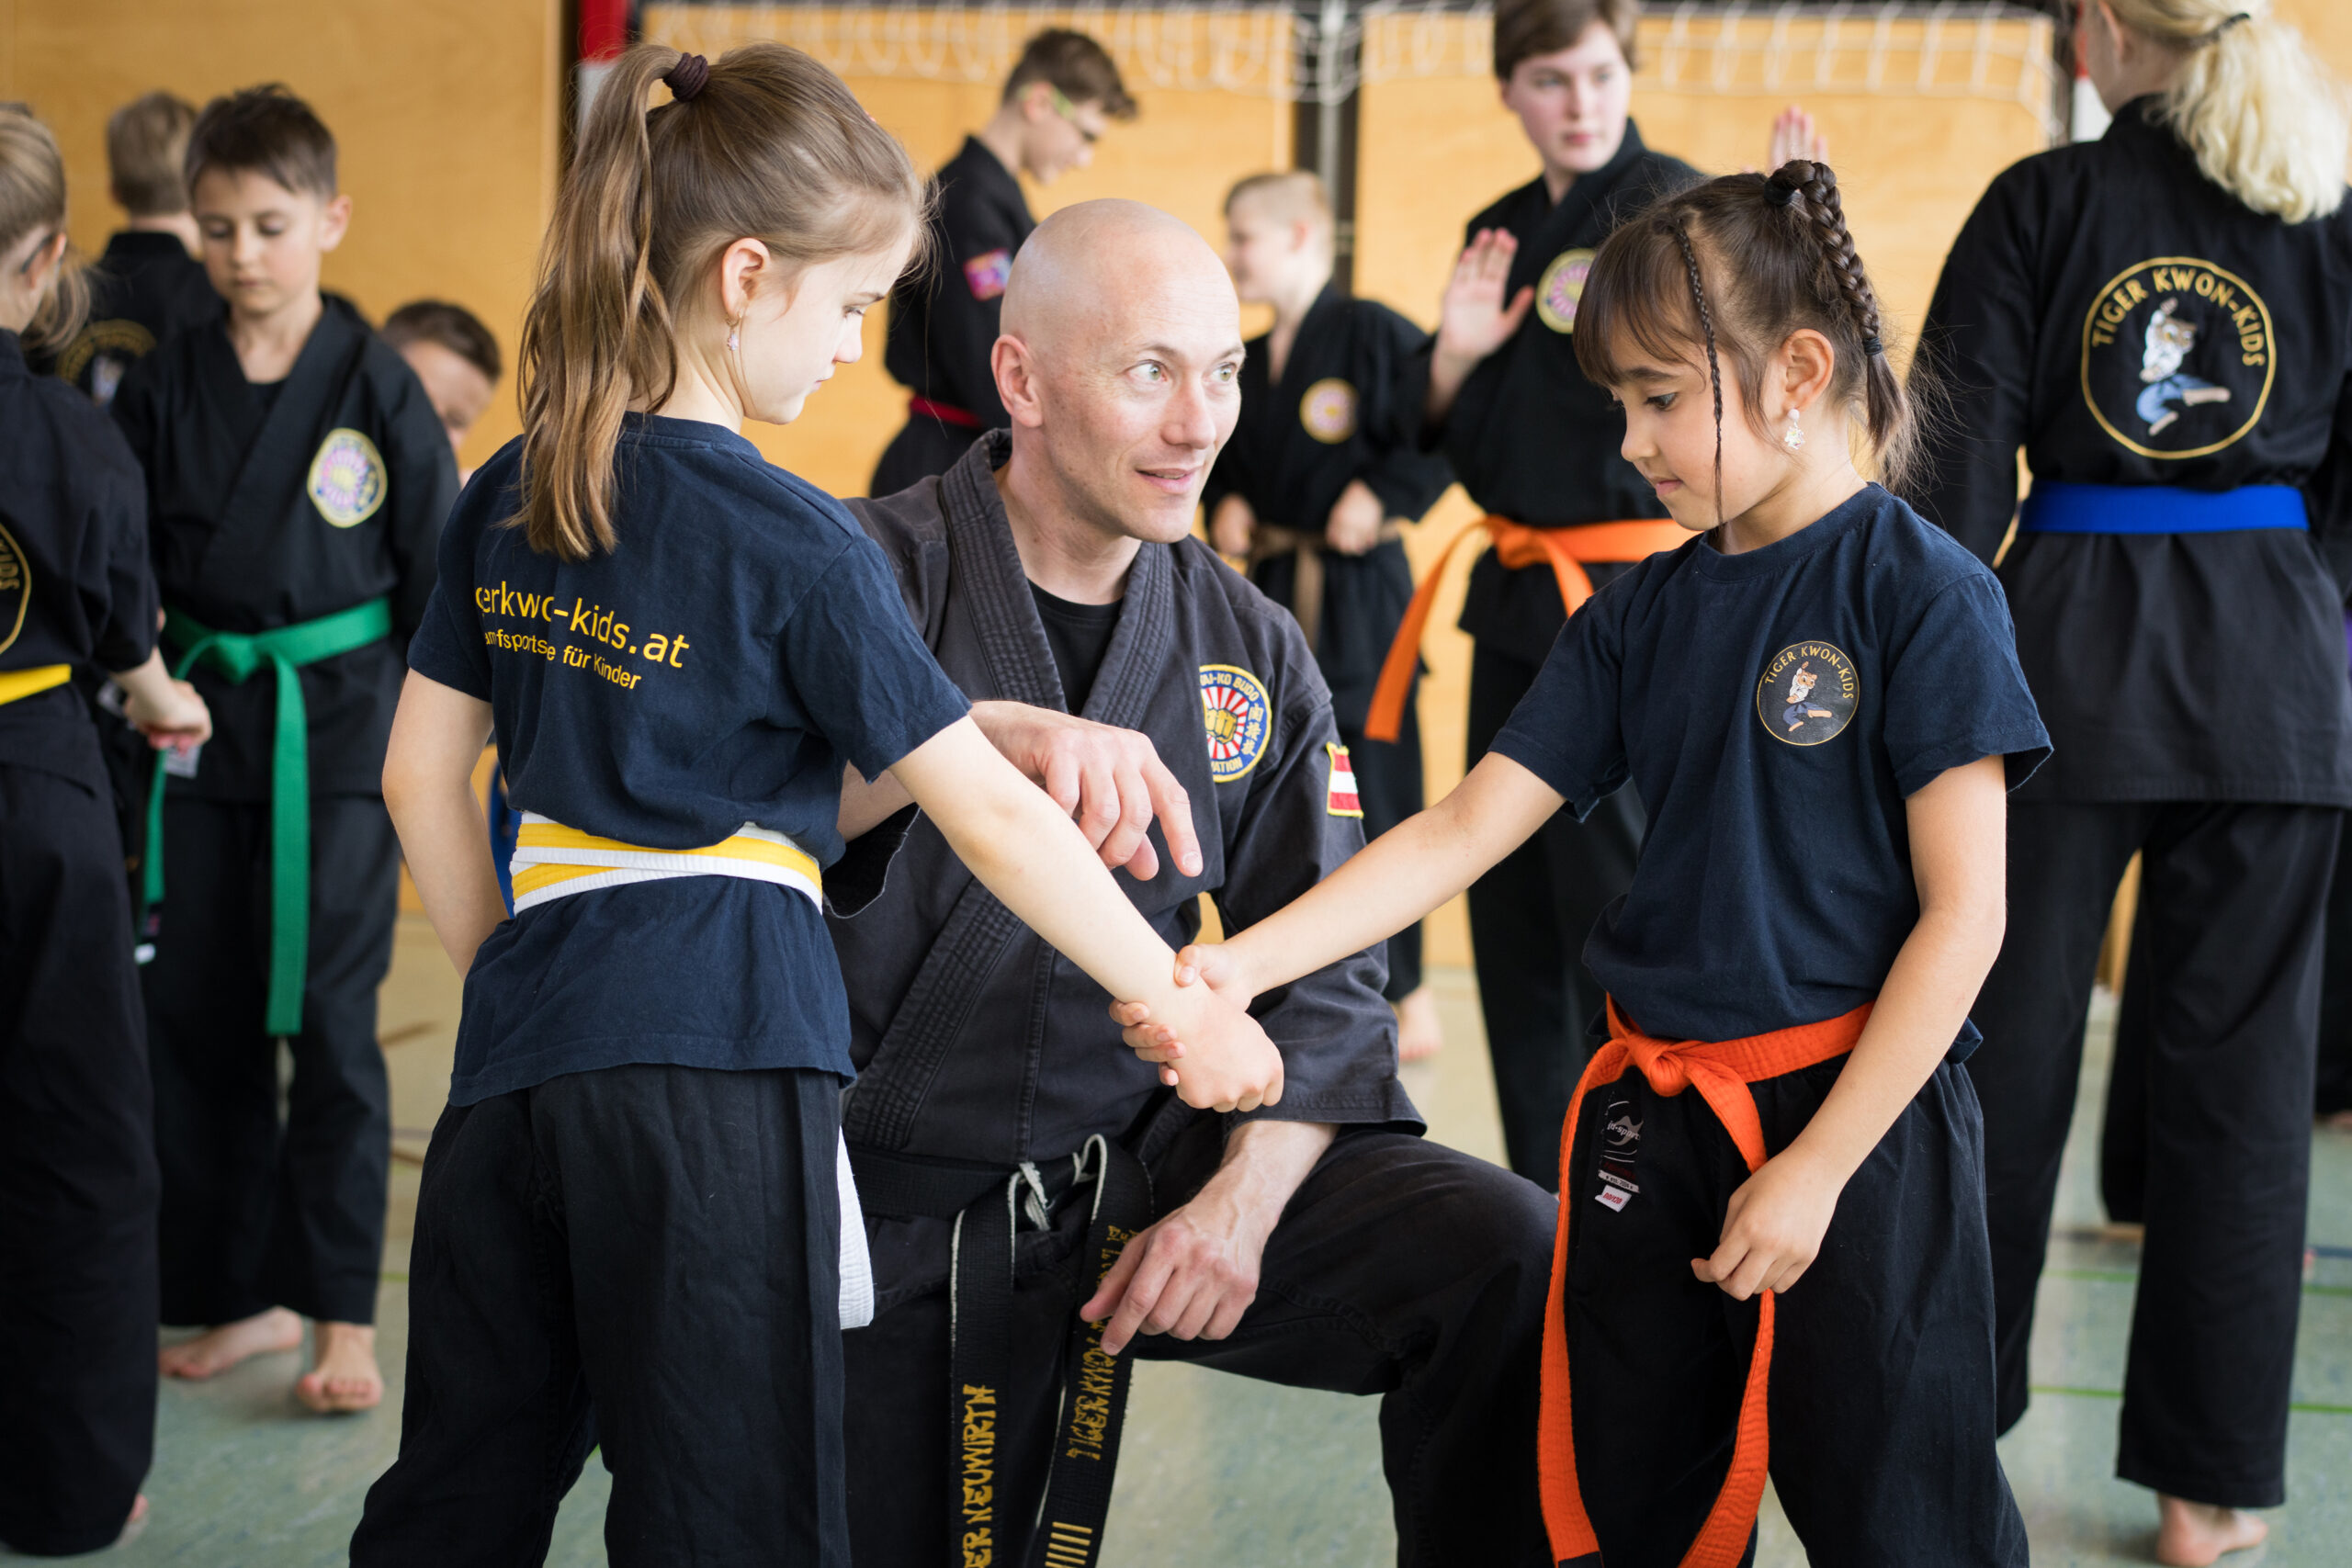 Karateschüler gewinnt Selbstvertrauen durch Selbstbehauptungsübung mit seinem Lehrer im Unterricht.